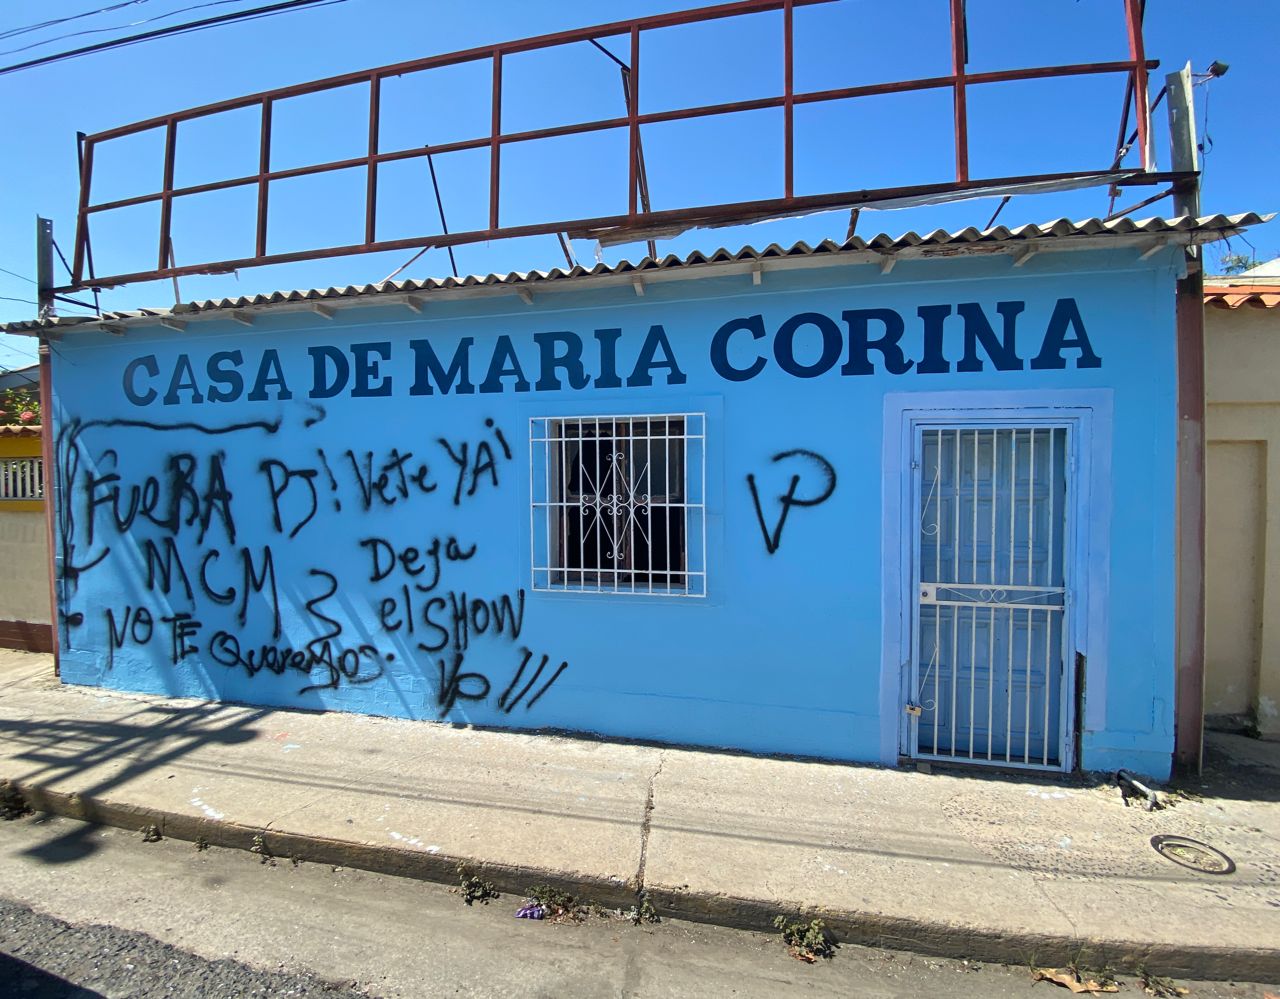 Rechazan actos vandálicos contra la sede del comando de campaña de María Corina Machado en Sucre